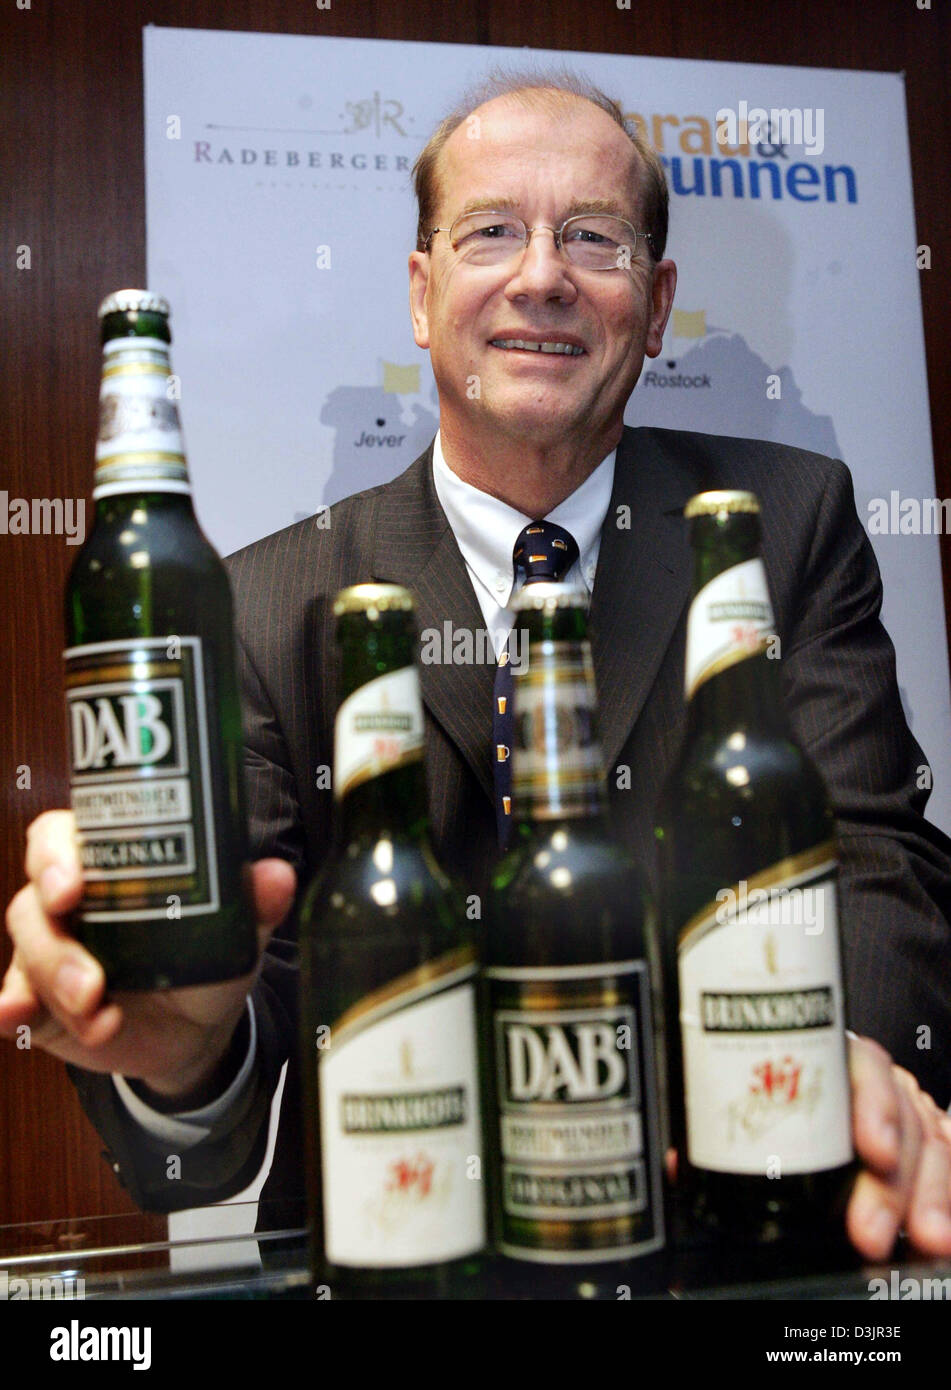 (Afp) - Ulrich Kallmeyer, chef de la section bière Oetker, pose avec les bouteilles de bière de la DAB et marques Brinkhoff's no 1 après une conférence de presse à l 'Brau und Brunnen' siège à Dortmund, Allemagne, 1 février 2005. Après les travailleurs et les réunions du personnel de Dortmund et Berlin en début de matinée la gestion de la section bière Oetker informé des réductions prévues et donc fin Banque D'Images